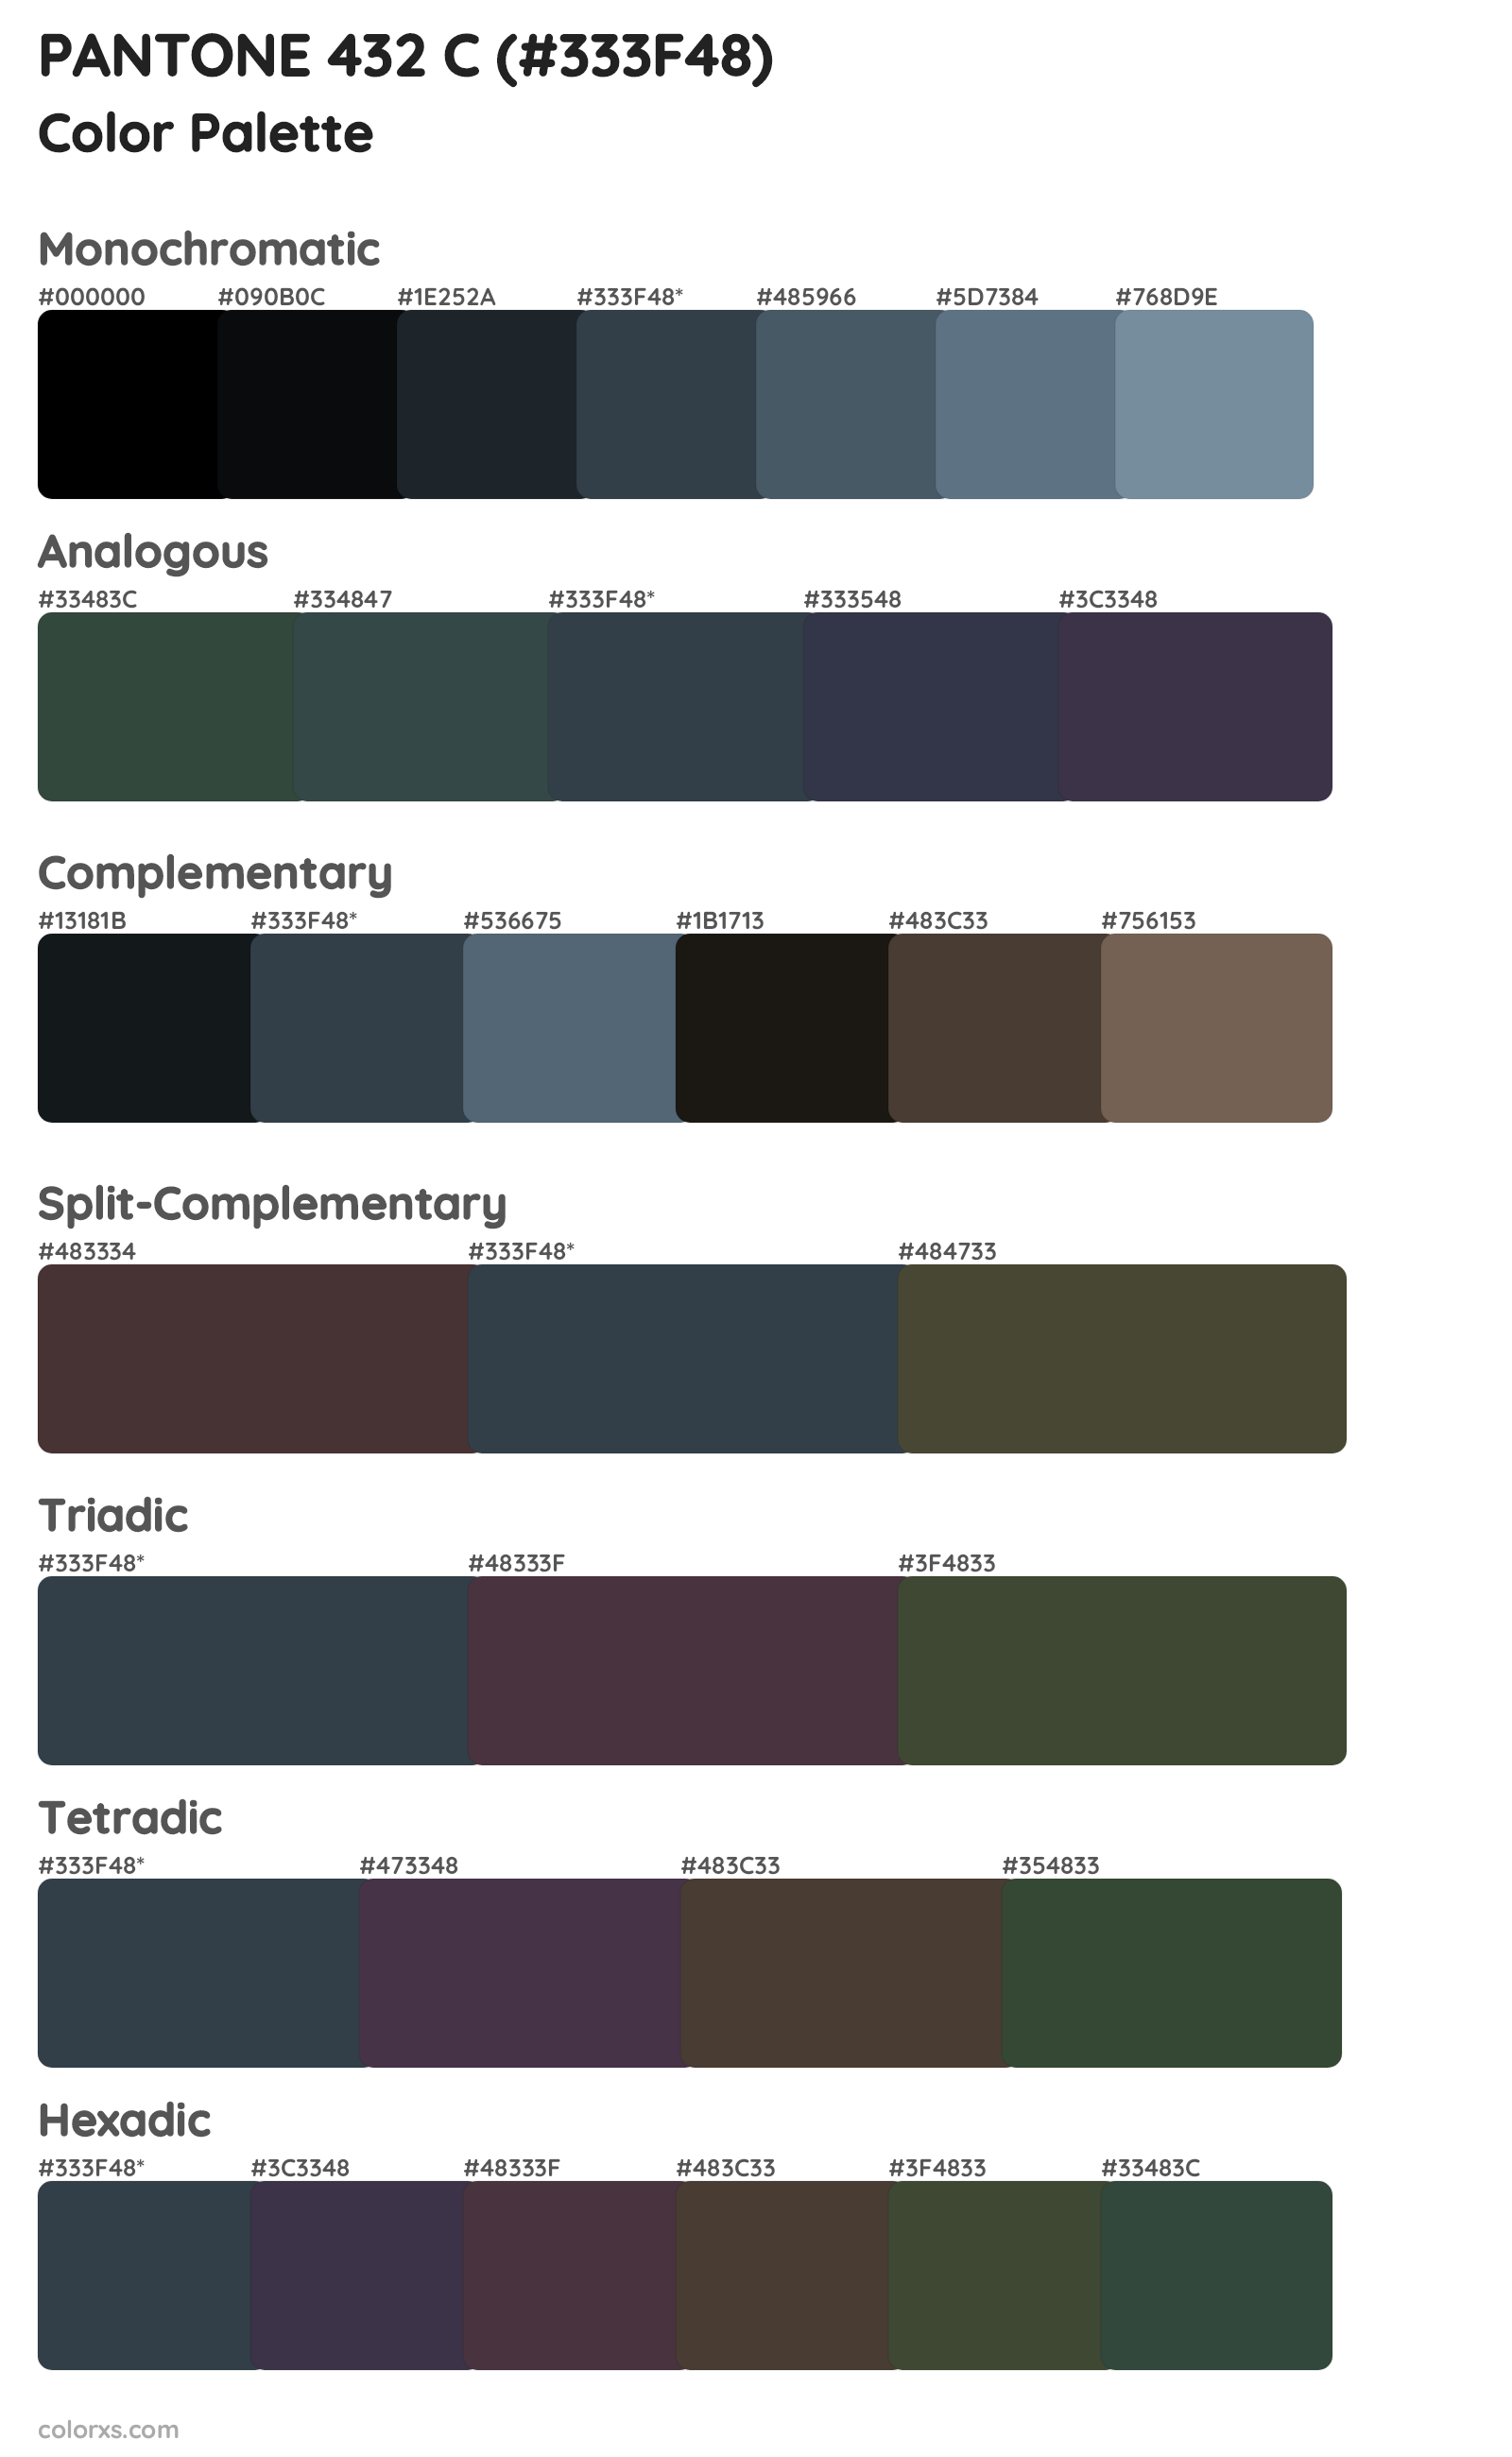 PANTONE 432 C Color Scheme Palettes